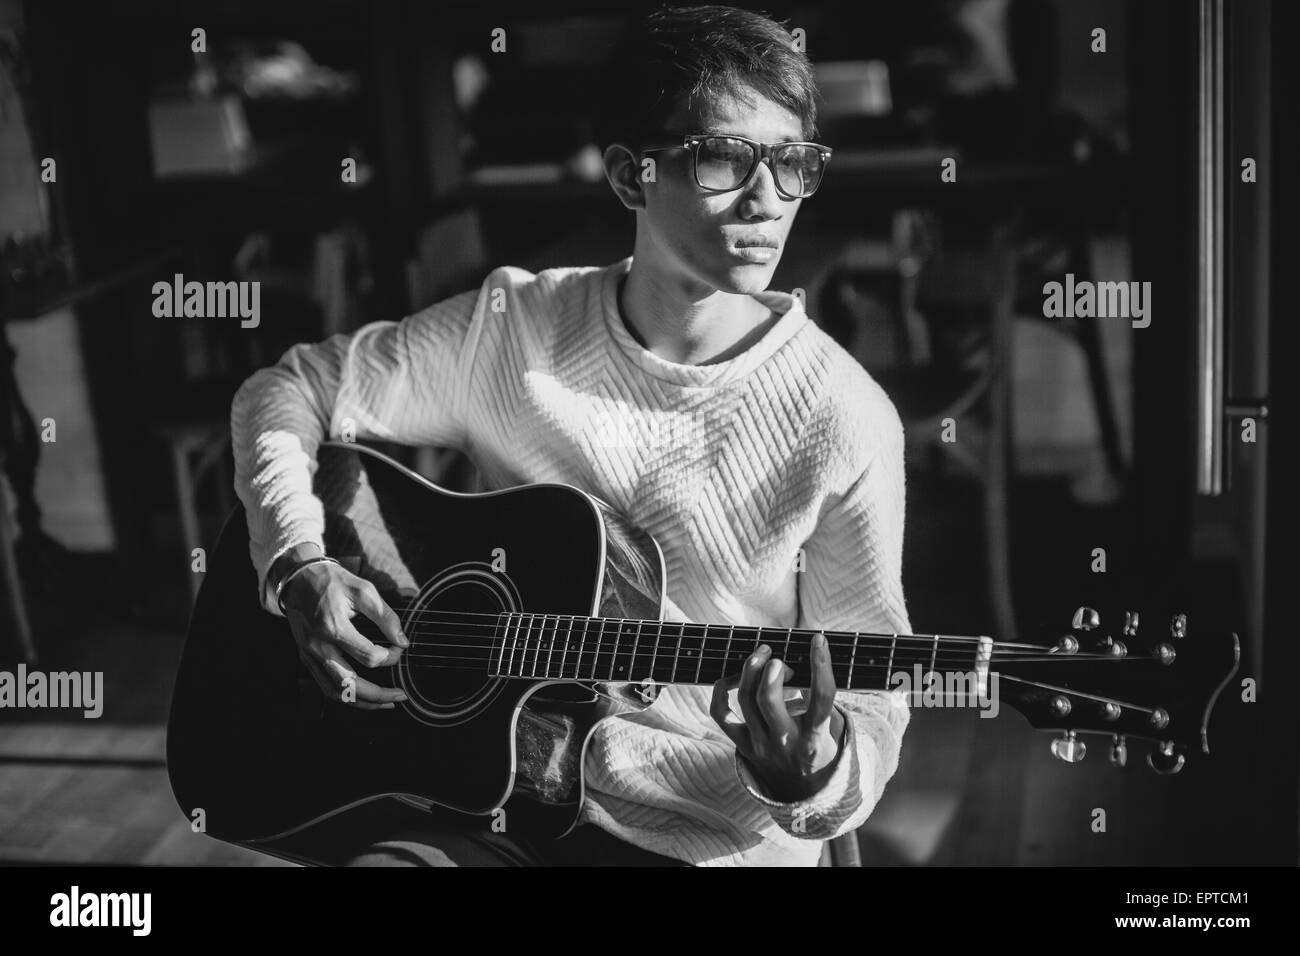 Bel homme artiste guitariste asiatique jouer la guitare acoustique dans le café. Le noir et blanc Banque D'Images